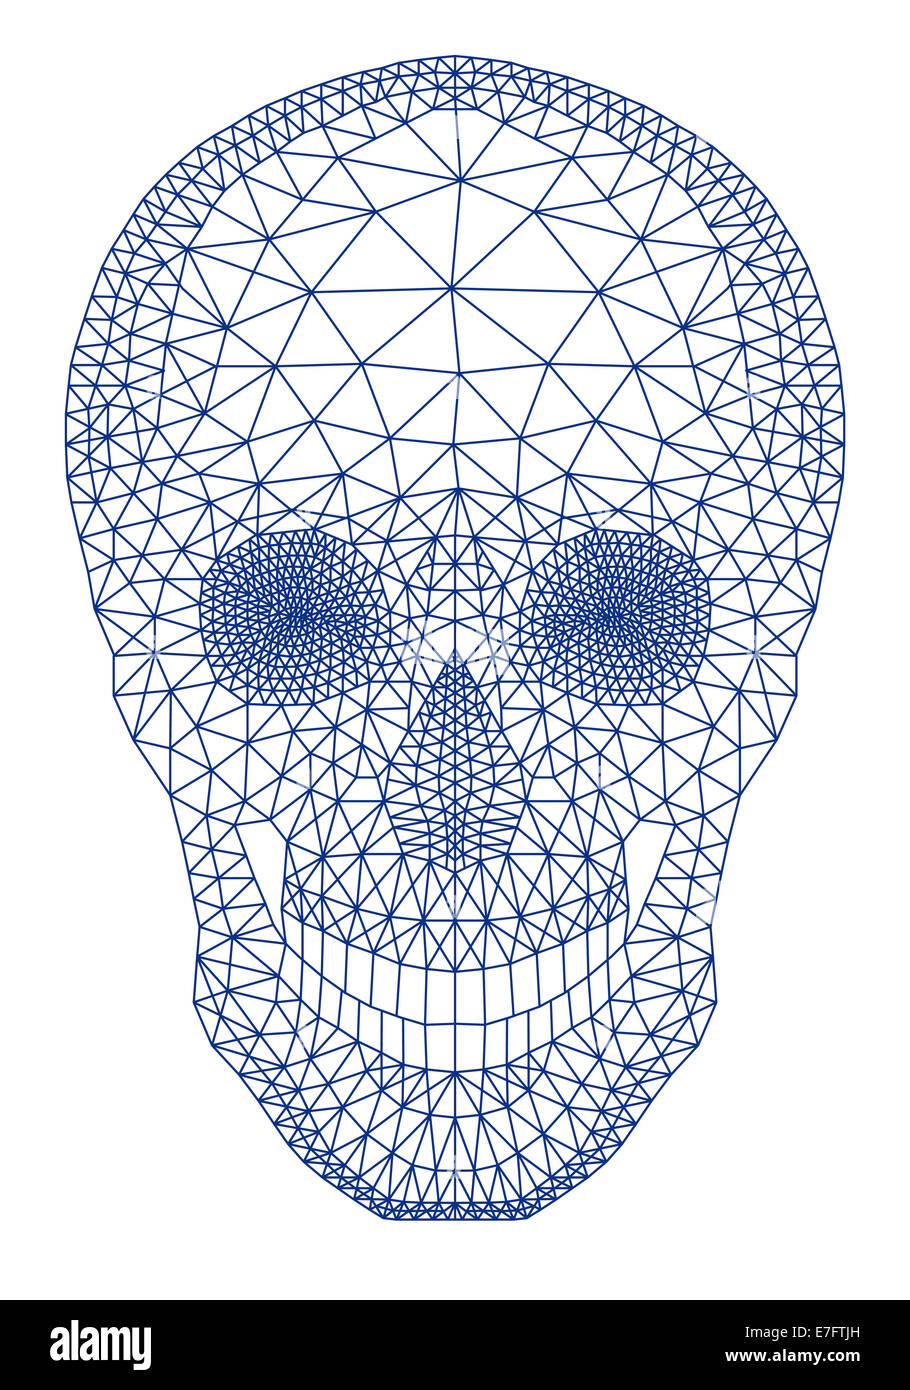 Cranio umano con mesh geometriche pattern, illustrazione vettoriale Foto Stock